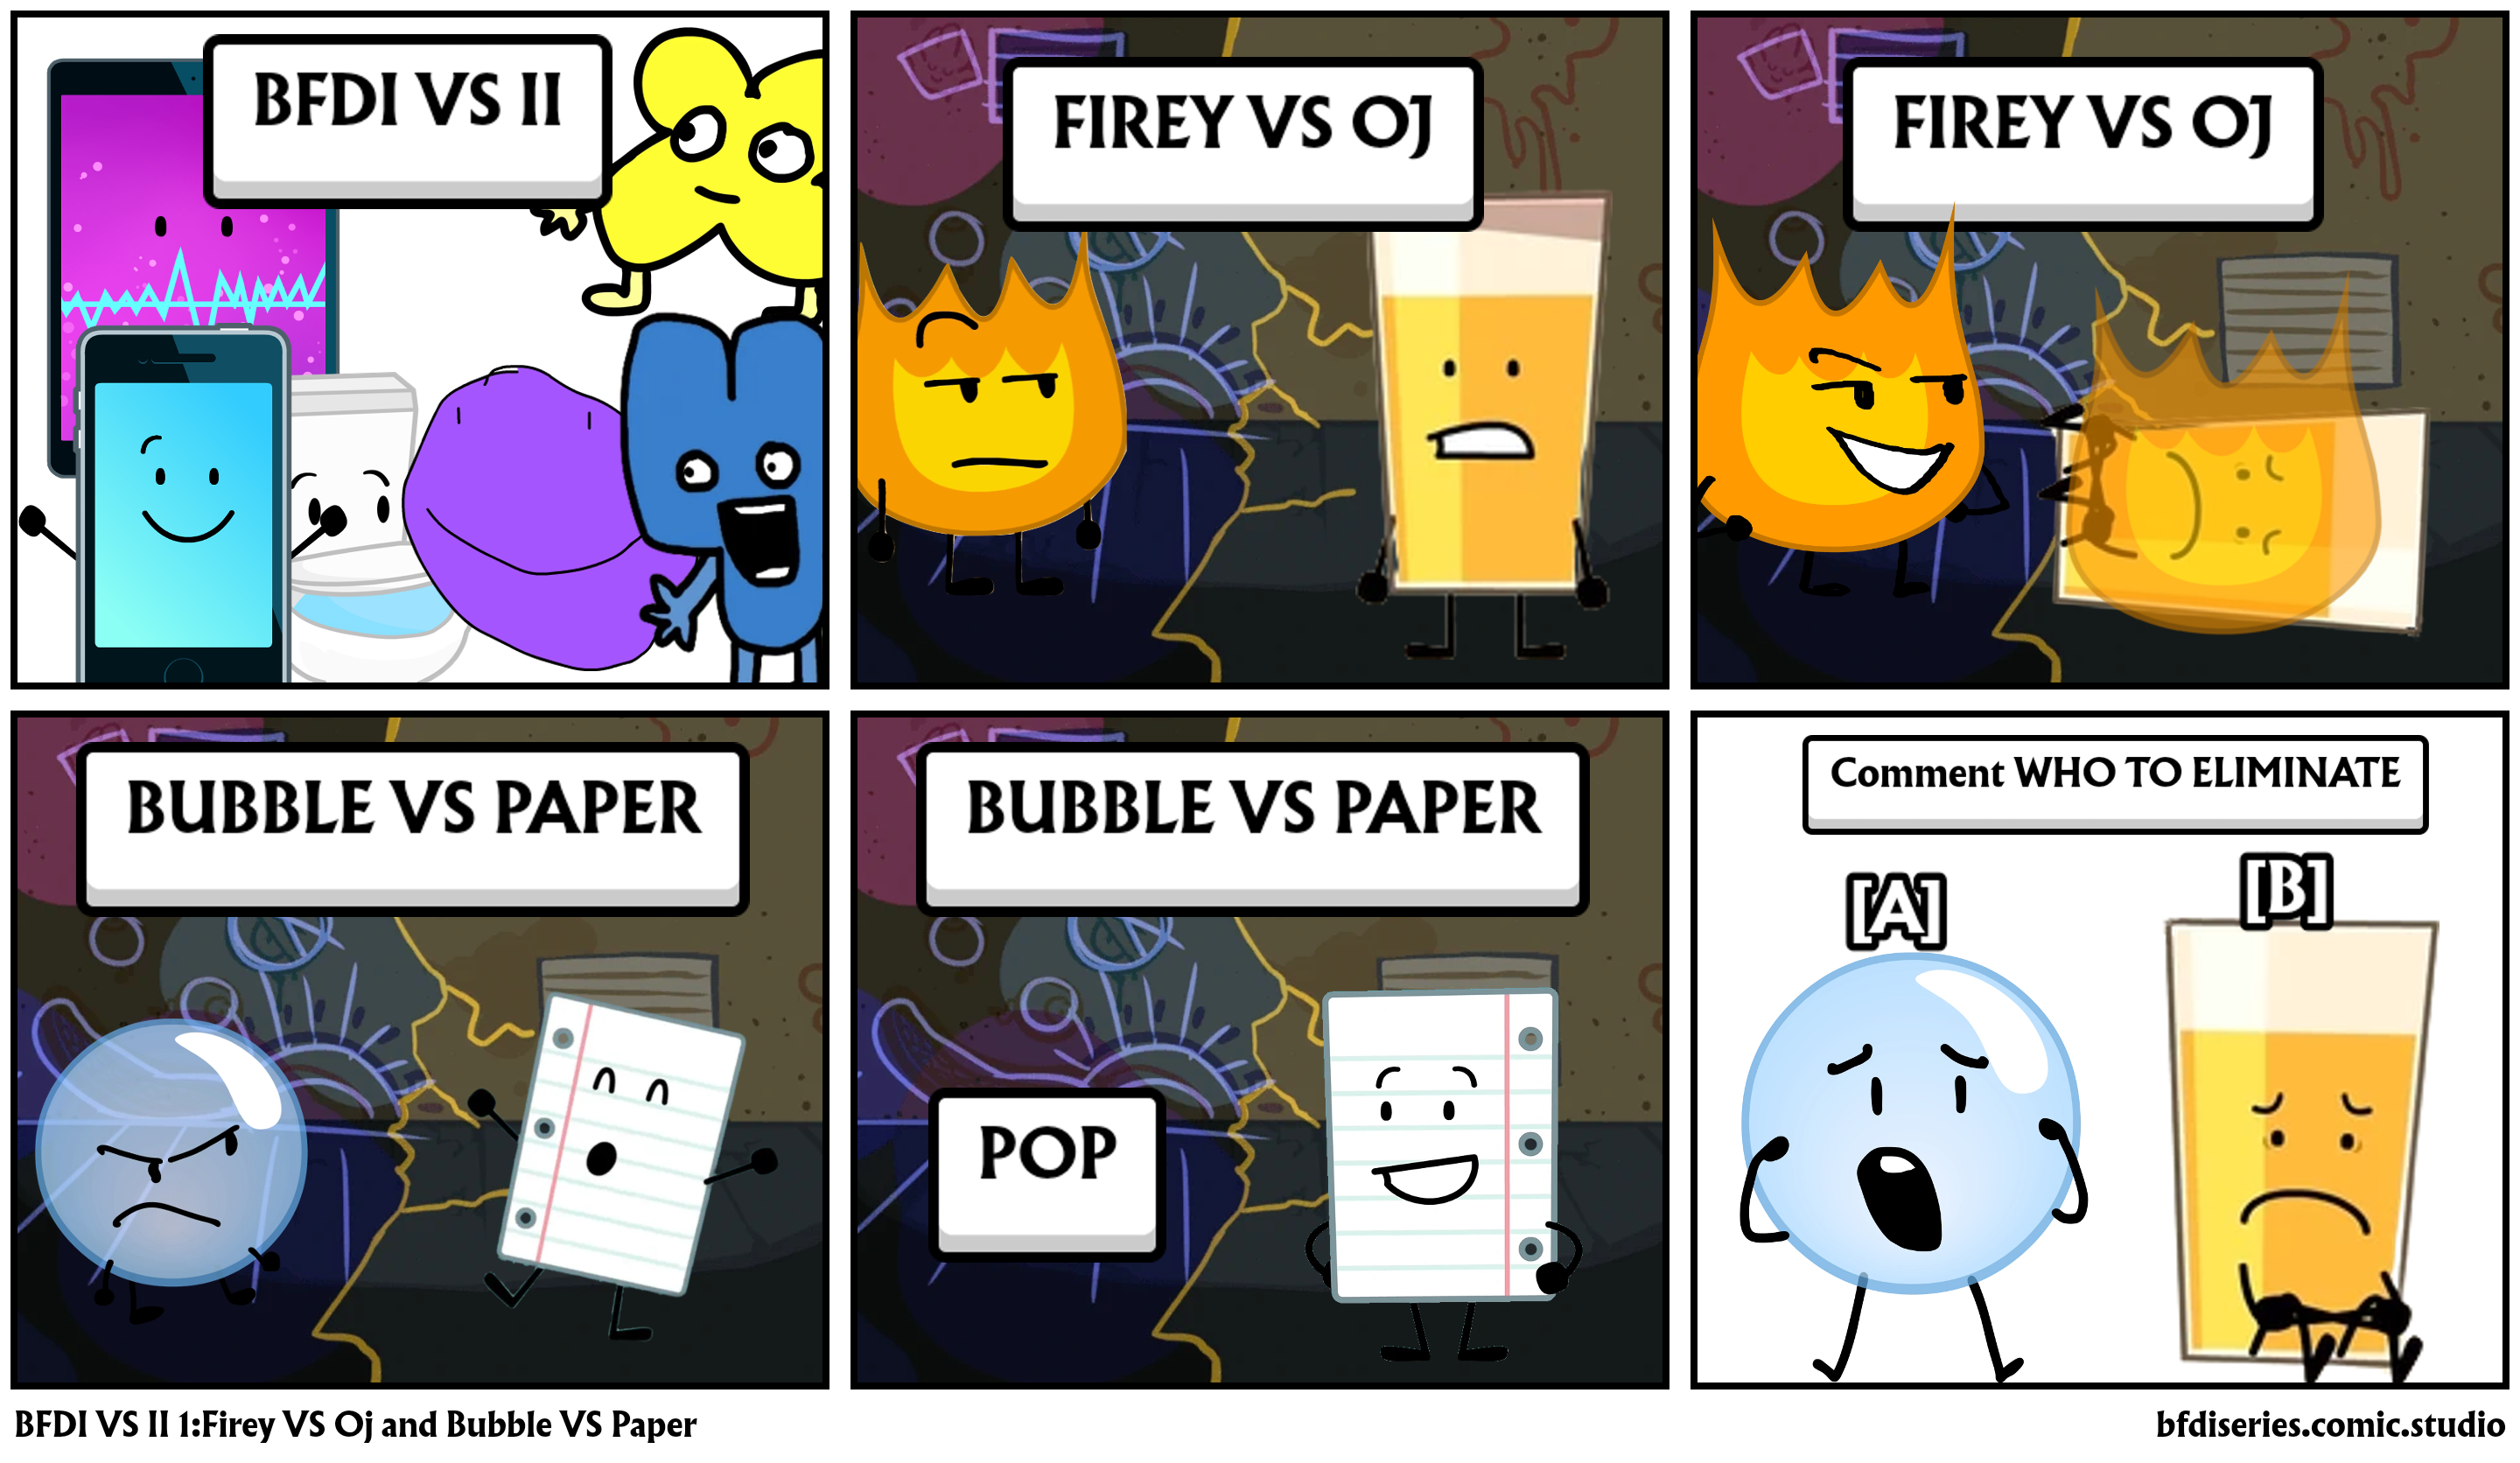 BFDI VS II 1:Firey VS Oj and Bubble VS Paper